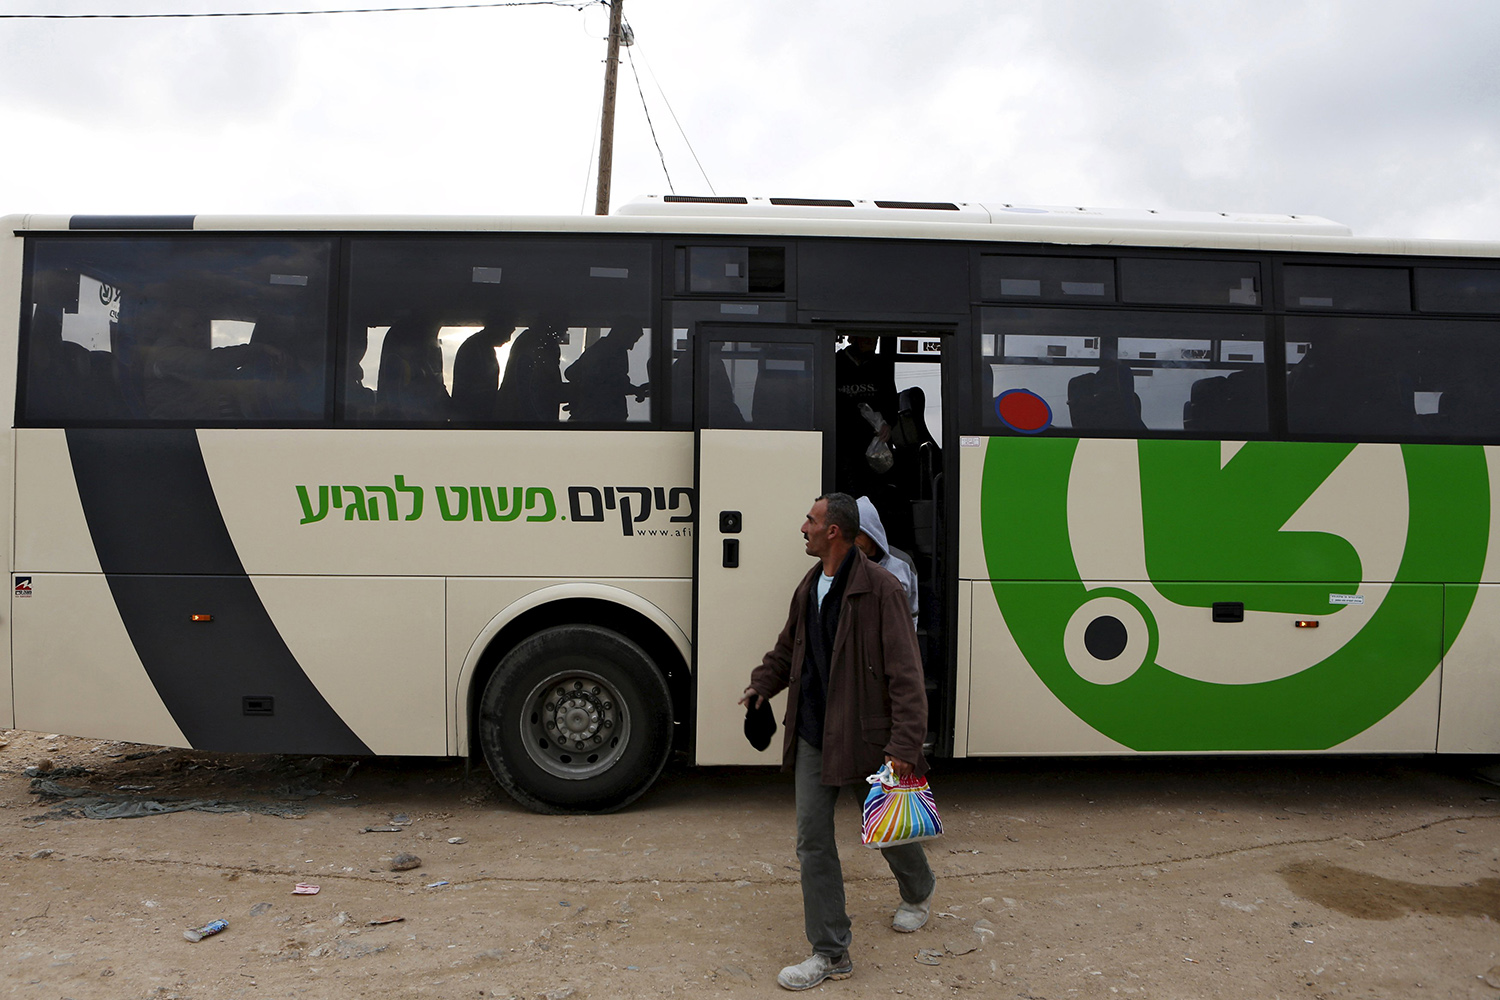 El bus del apartheid